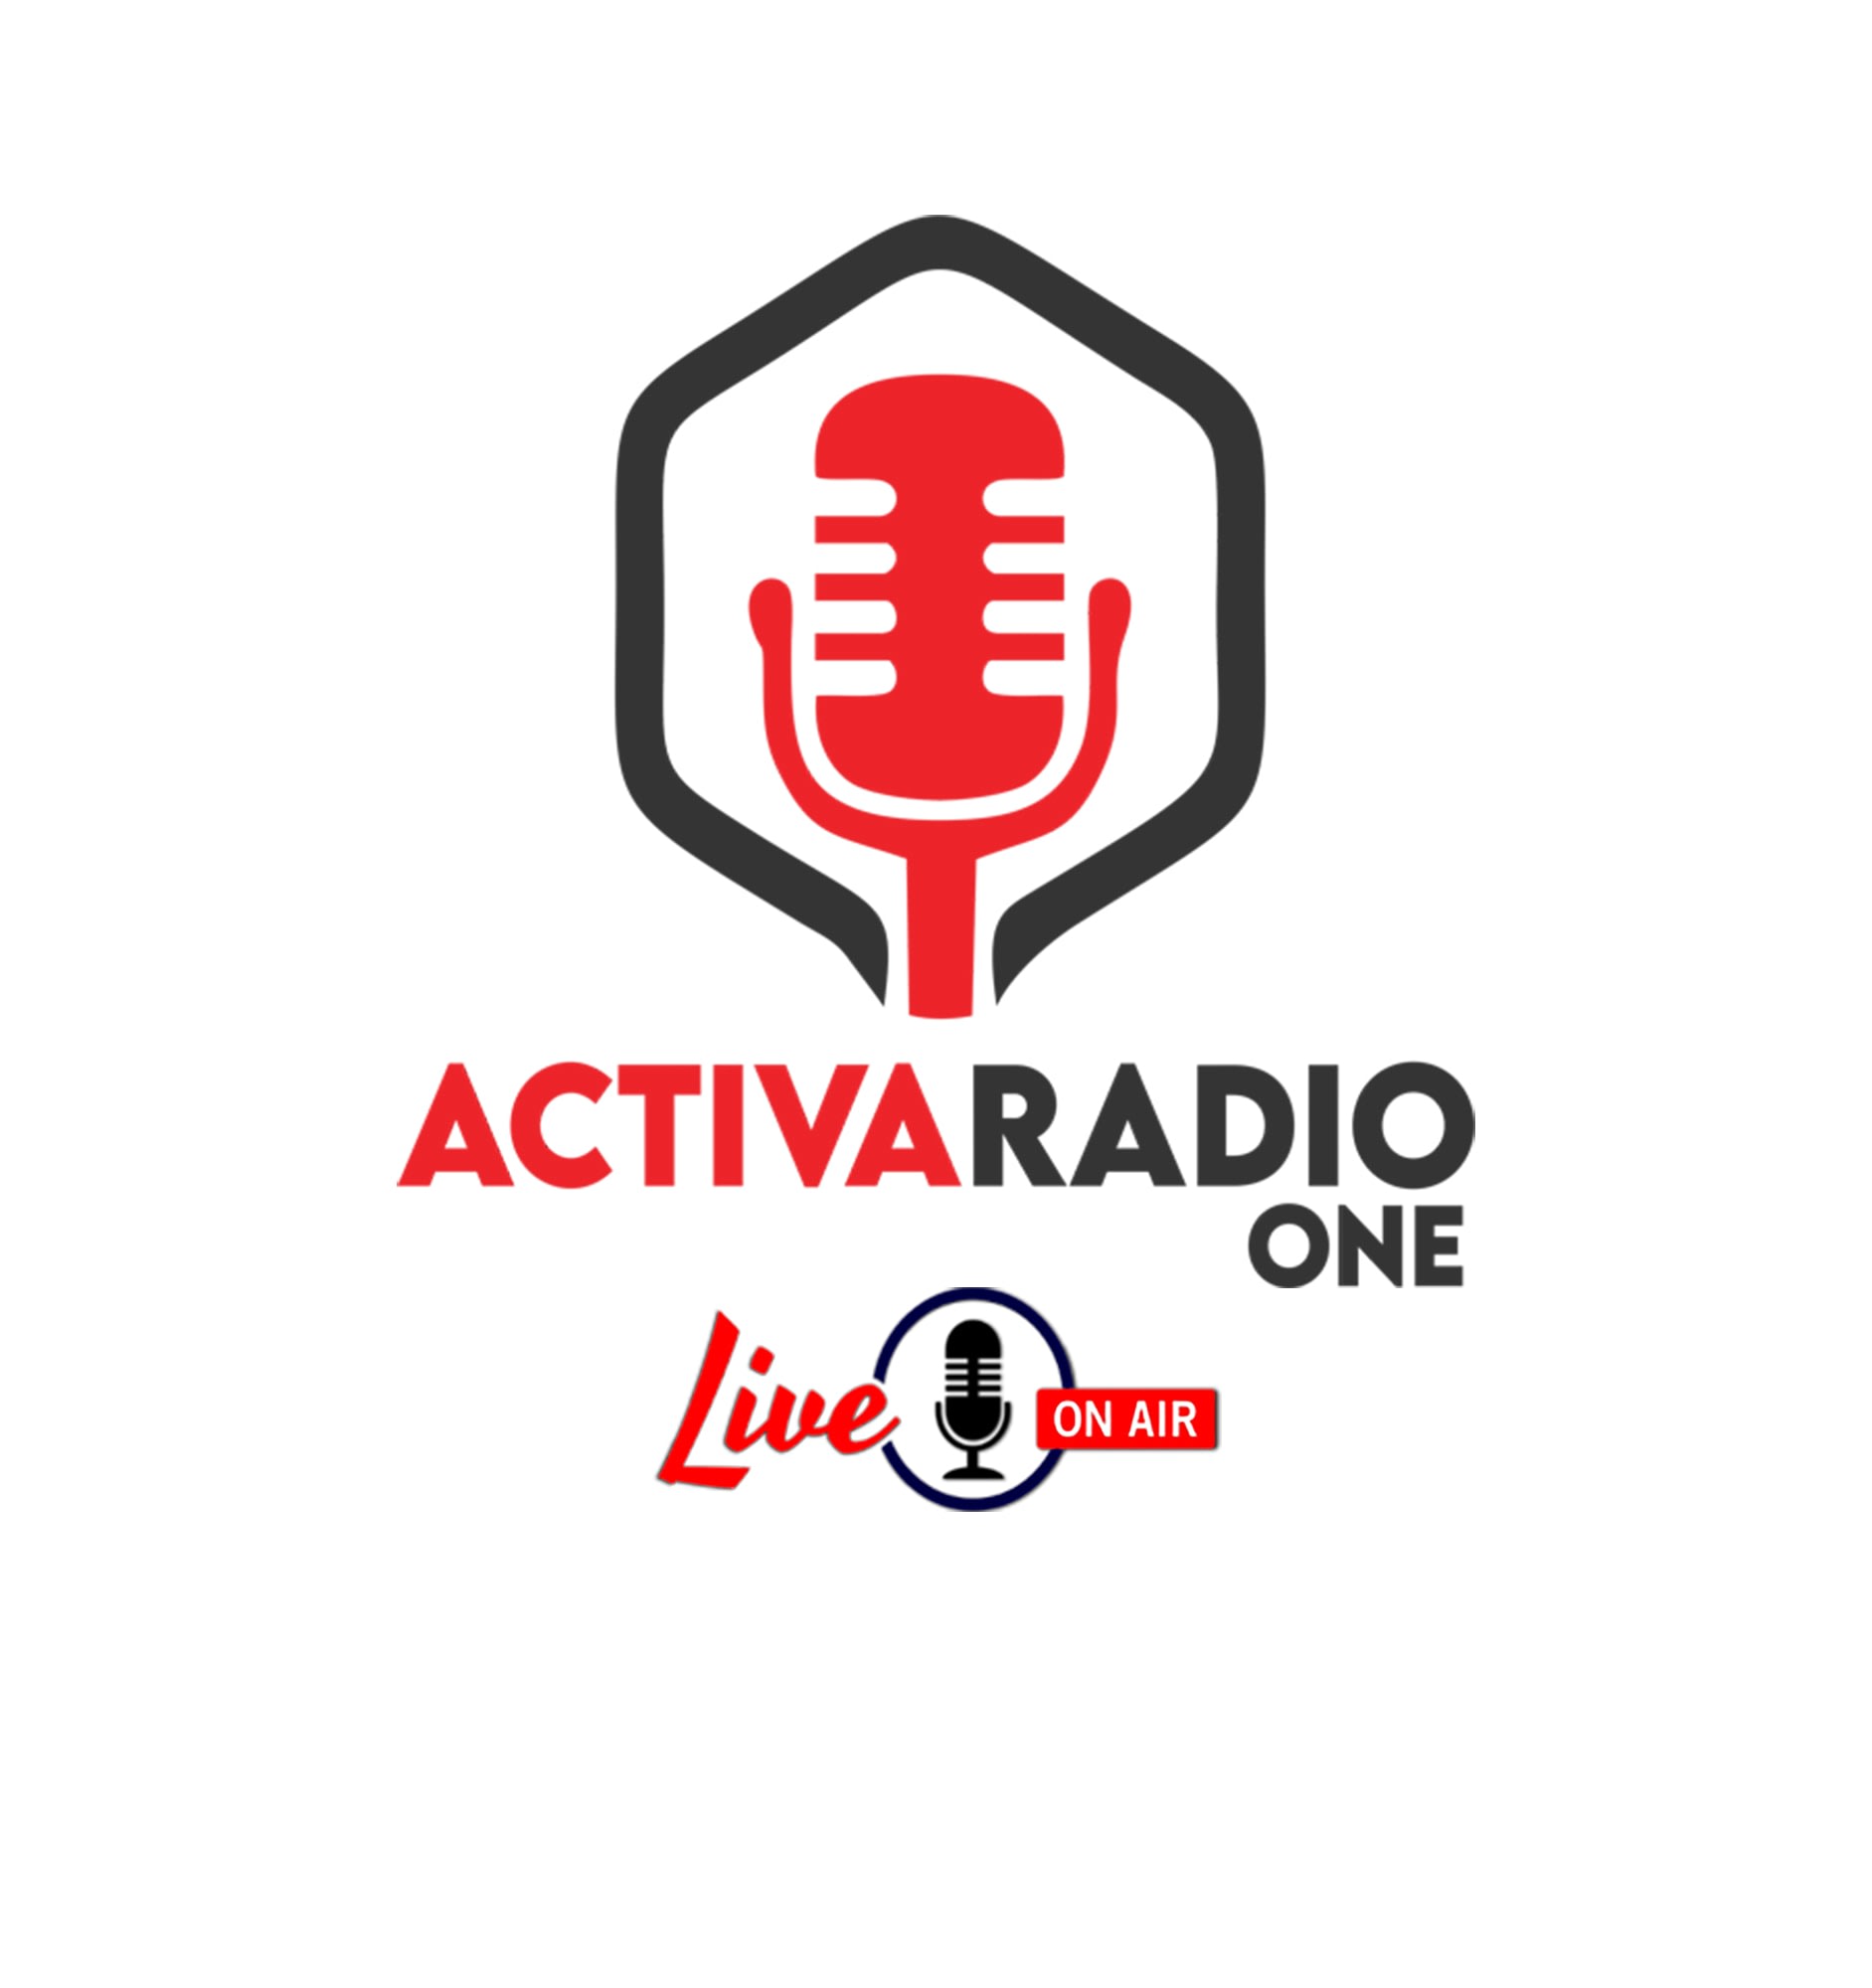 Activa Radio One